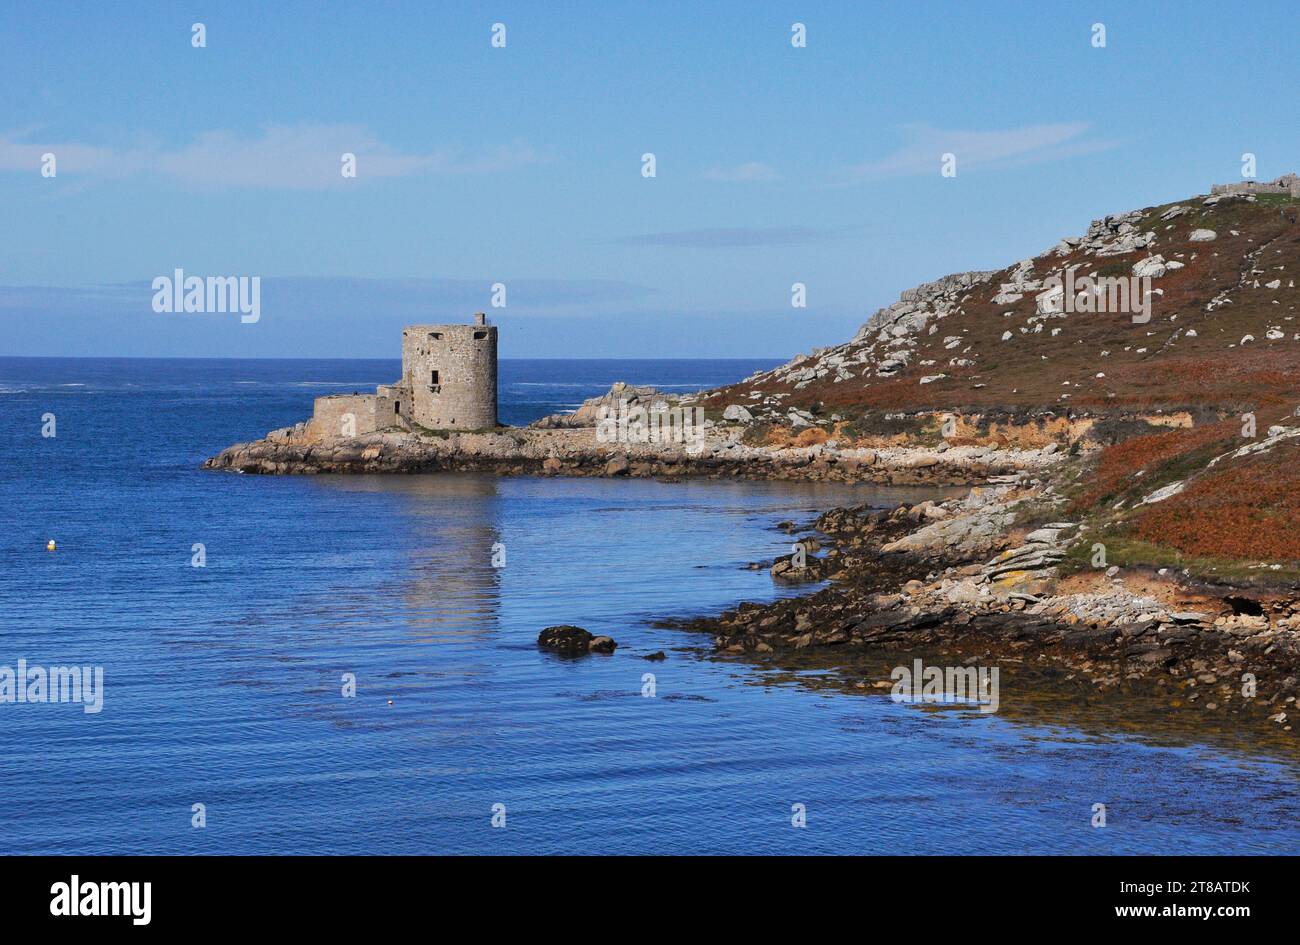 Ein Spiegelbild der Burg Cromwells auf Tresco im ungewöhnlich ruhigen Meer zwischen der Insel und Bryher auf den Scilly-Inseln. Das blaue Meer plätschert leise Stockfoto